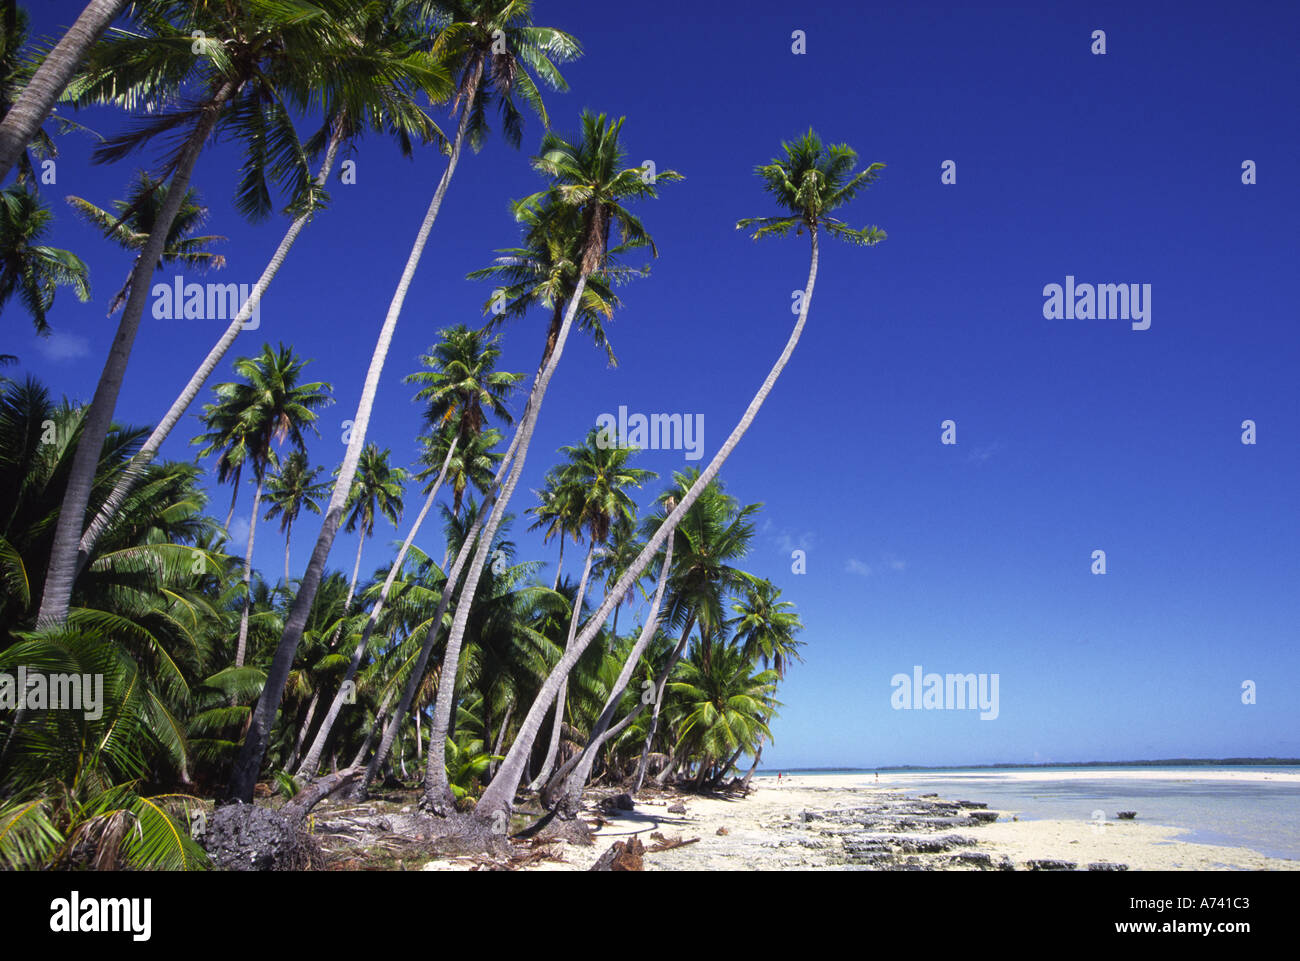 Mataiva Island Tuamotus French Polynesia Stock Photo - Alamy